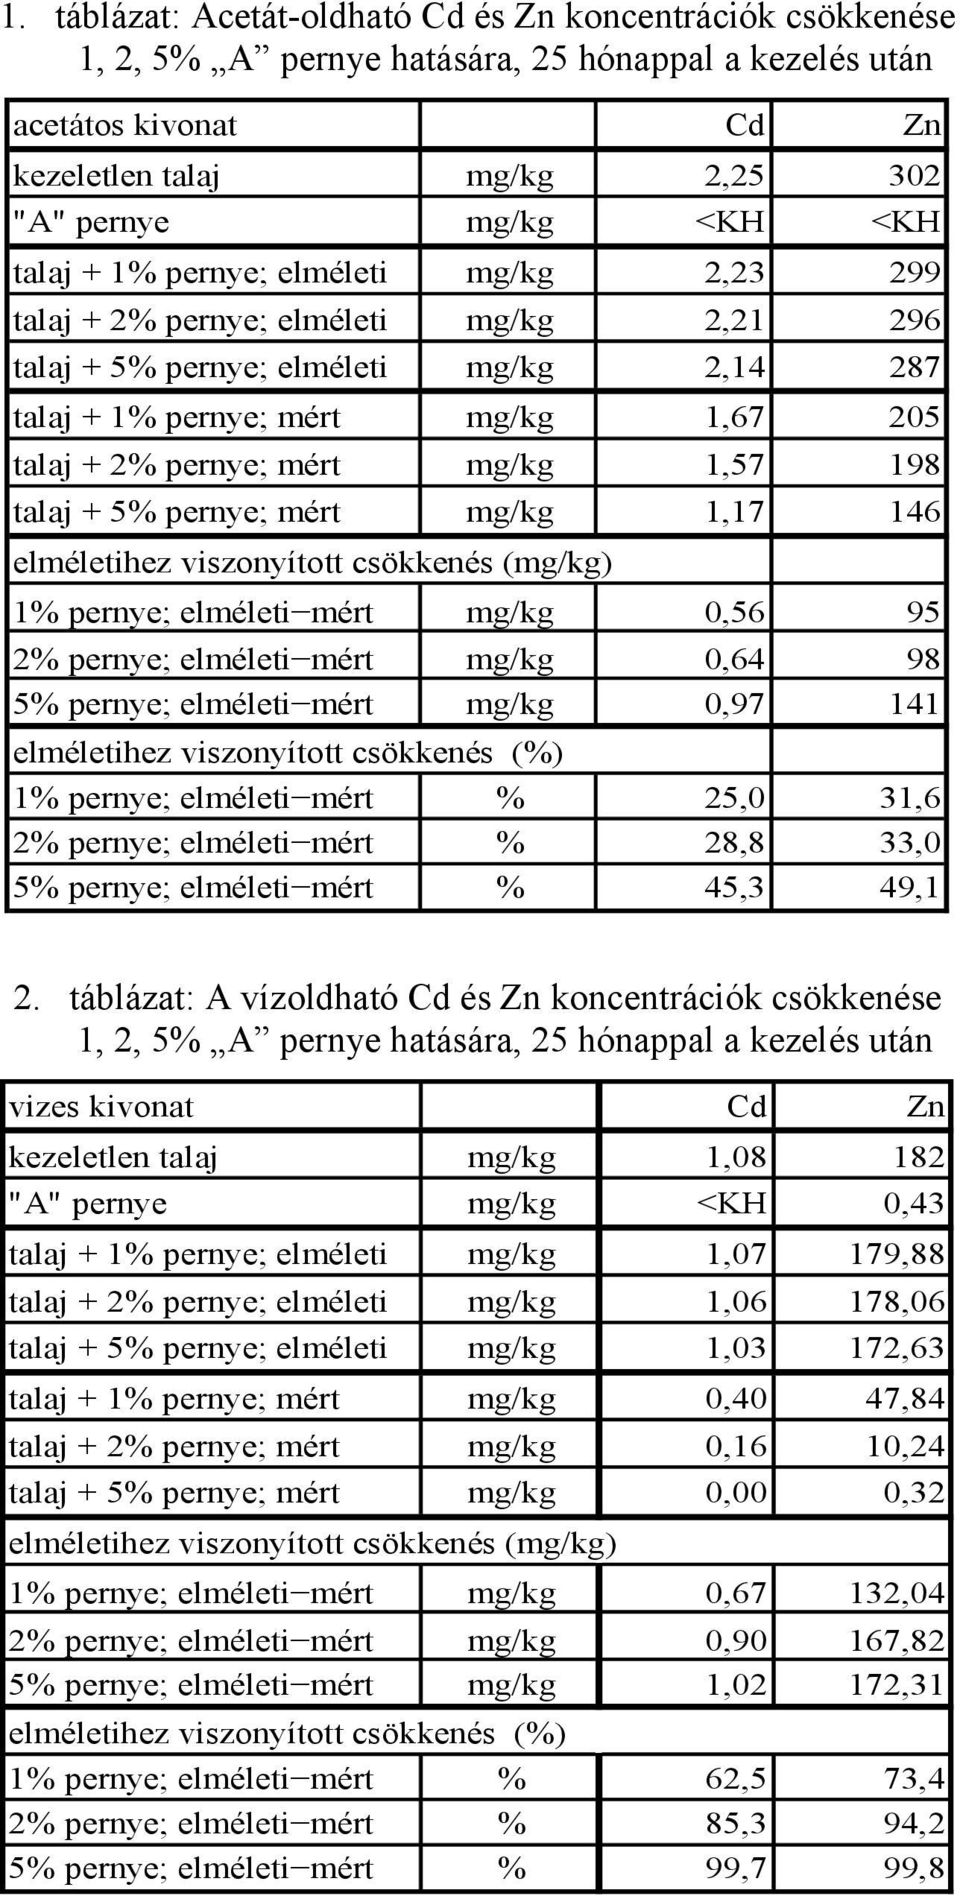 1,57 198 talaj + 5% pernye; mért mg/kg 1,17 146 elméletihez viszonyított csökkenés (mg/kg) 1% pernye; elméleti mért mg/kg 0,56 95 2% pernye; elméleti mért mg/kg 0,64 98 5% pernye; elméleti mért mg/kg